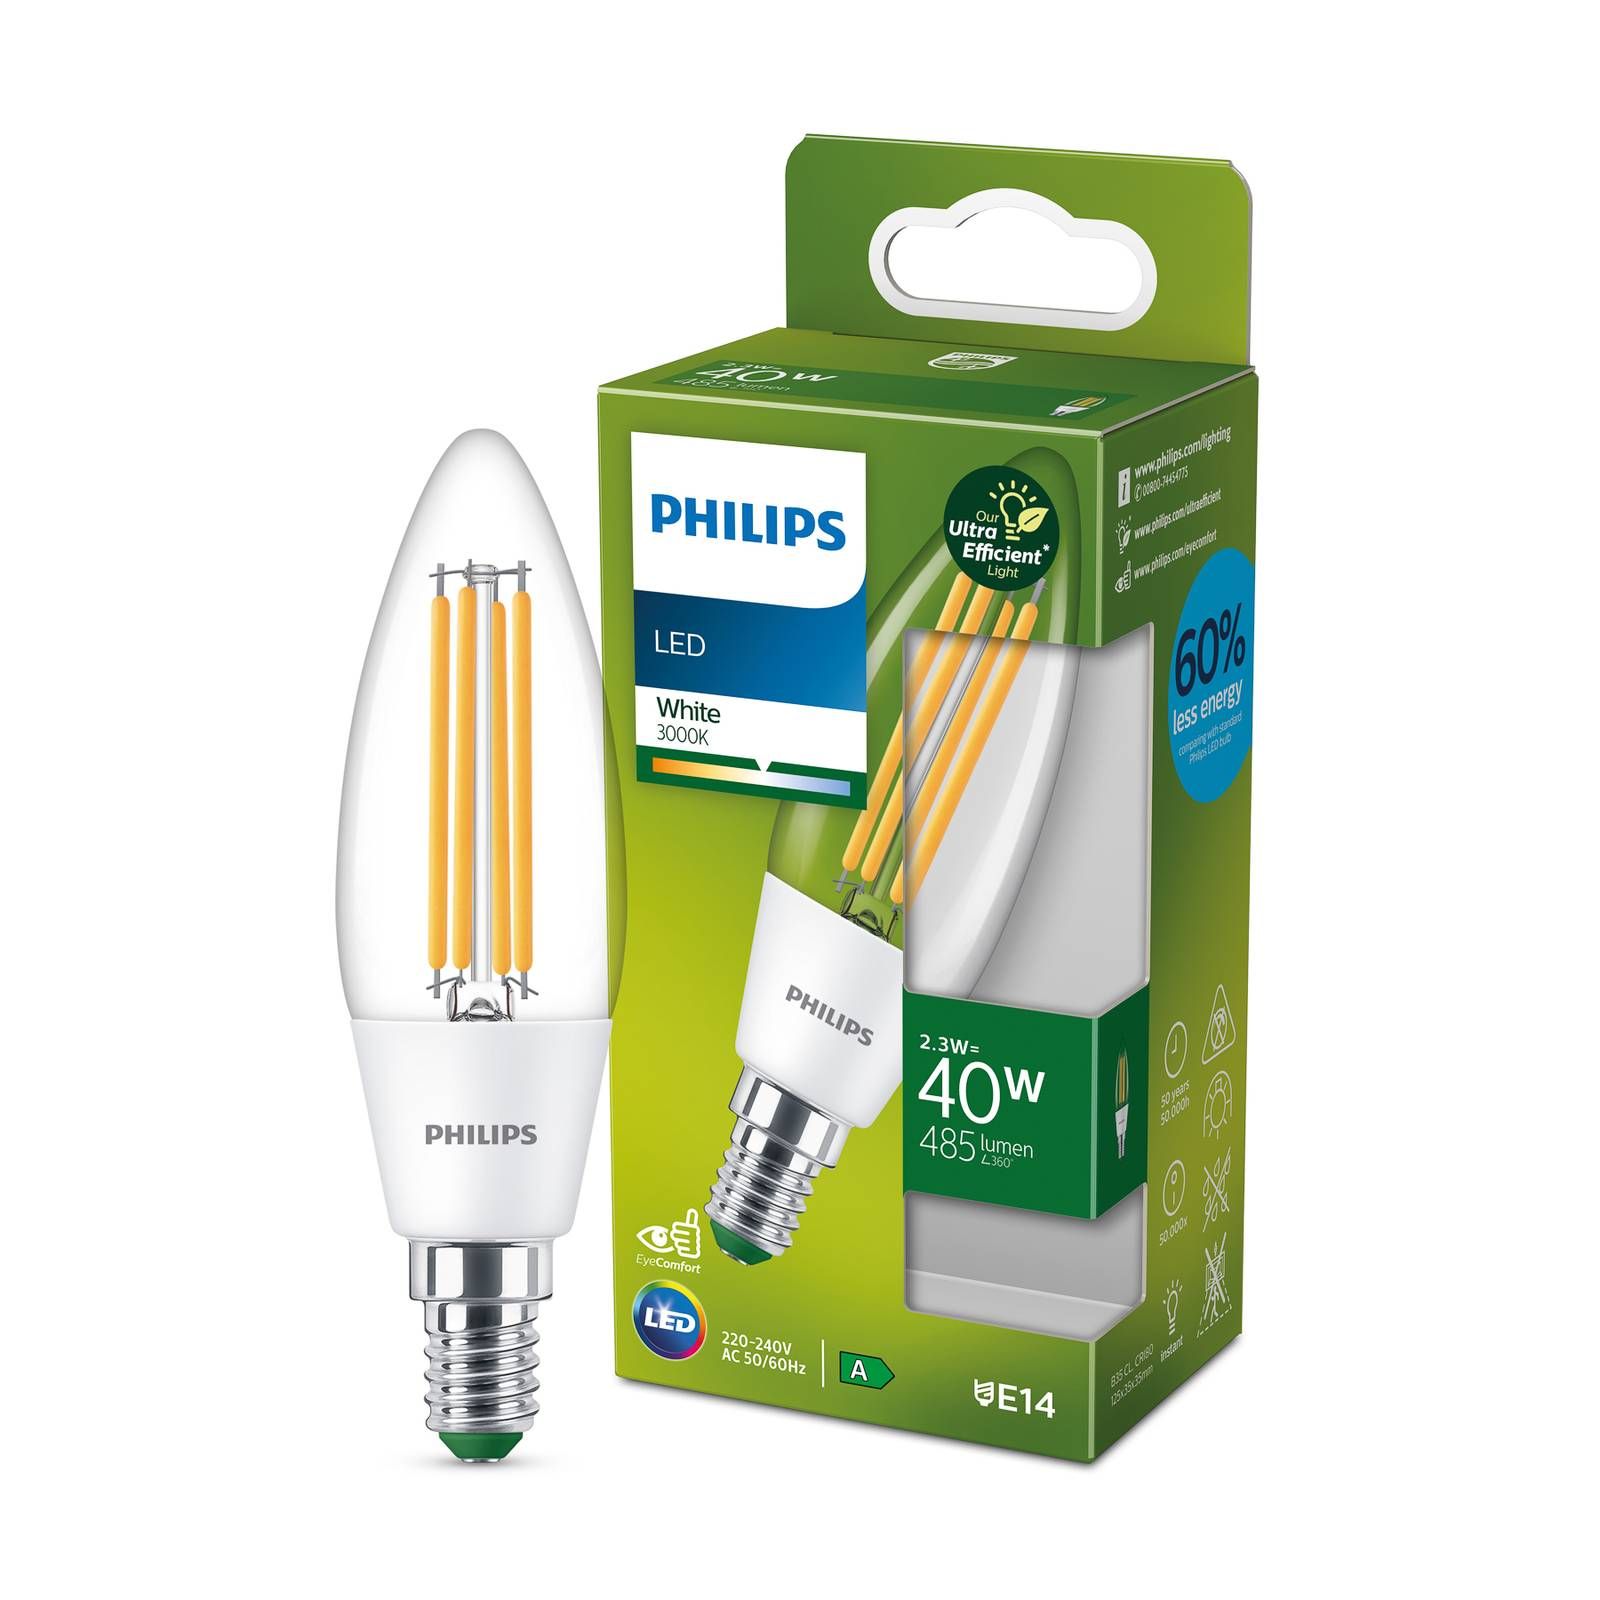 Philips LED žiarovka E14 2, 3W 485lm číra 3 000K, sklo, E14, 2.3W, Energialuokka: A, P: 12.5 cm